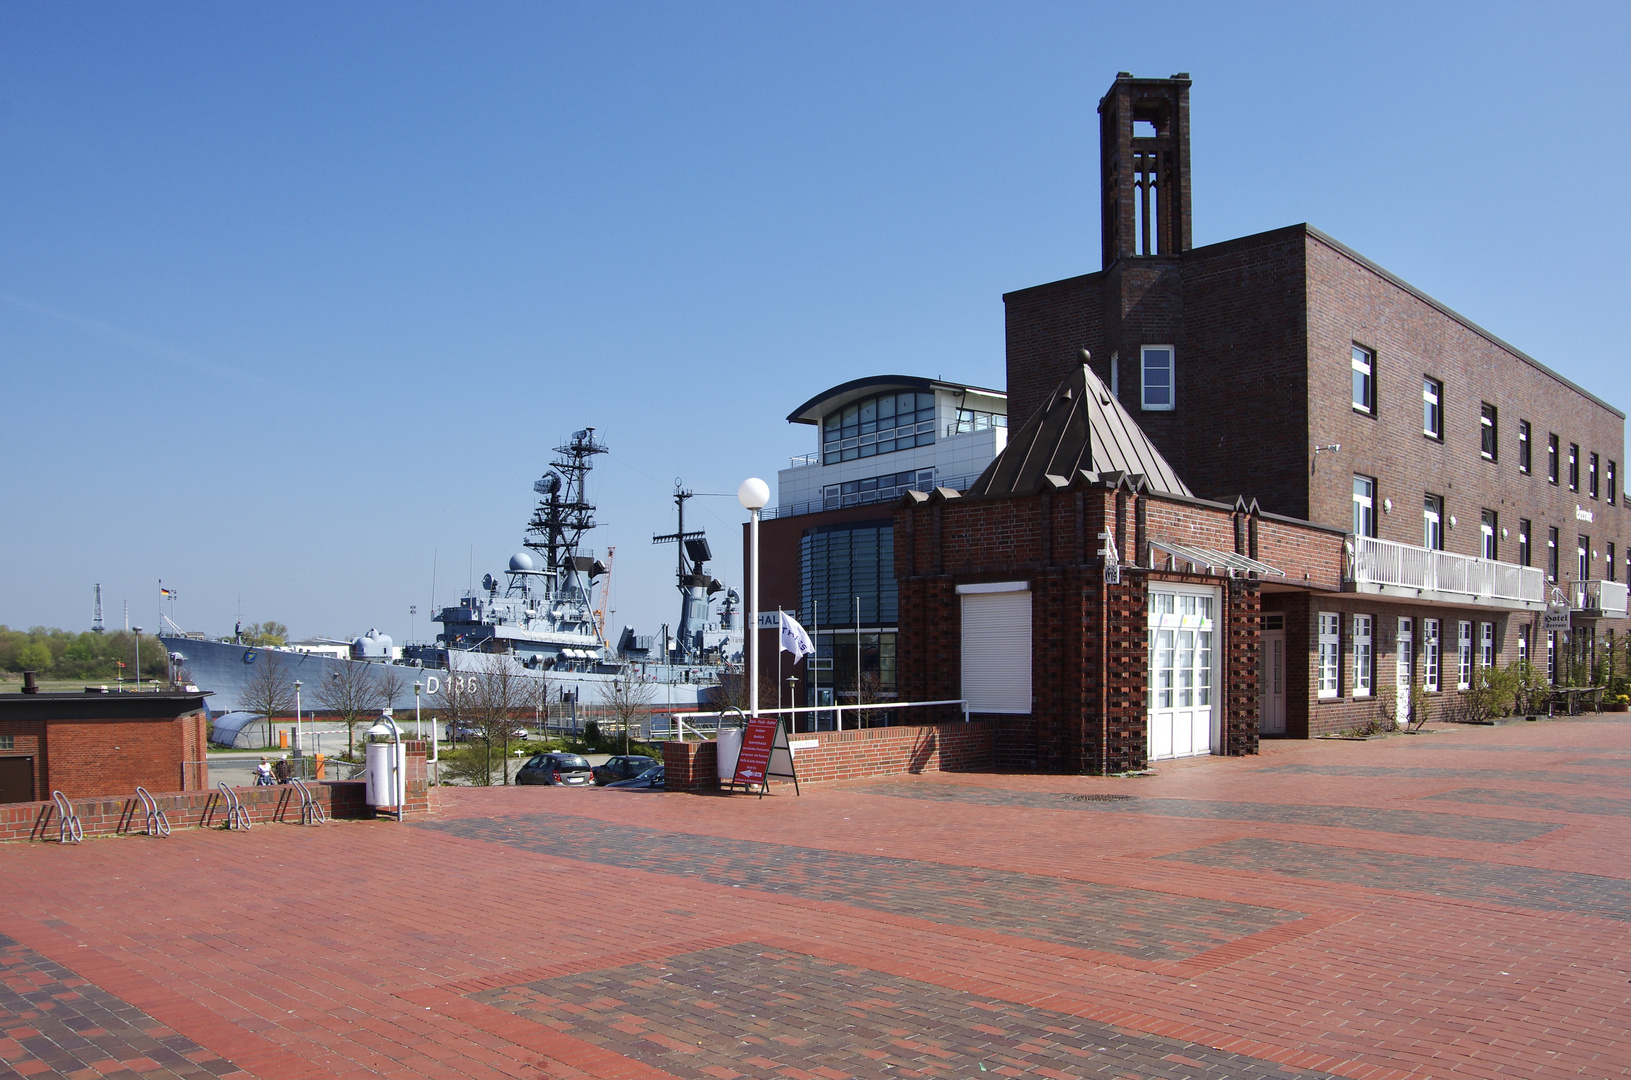 Marinemuseum